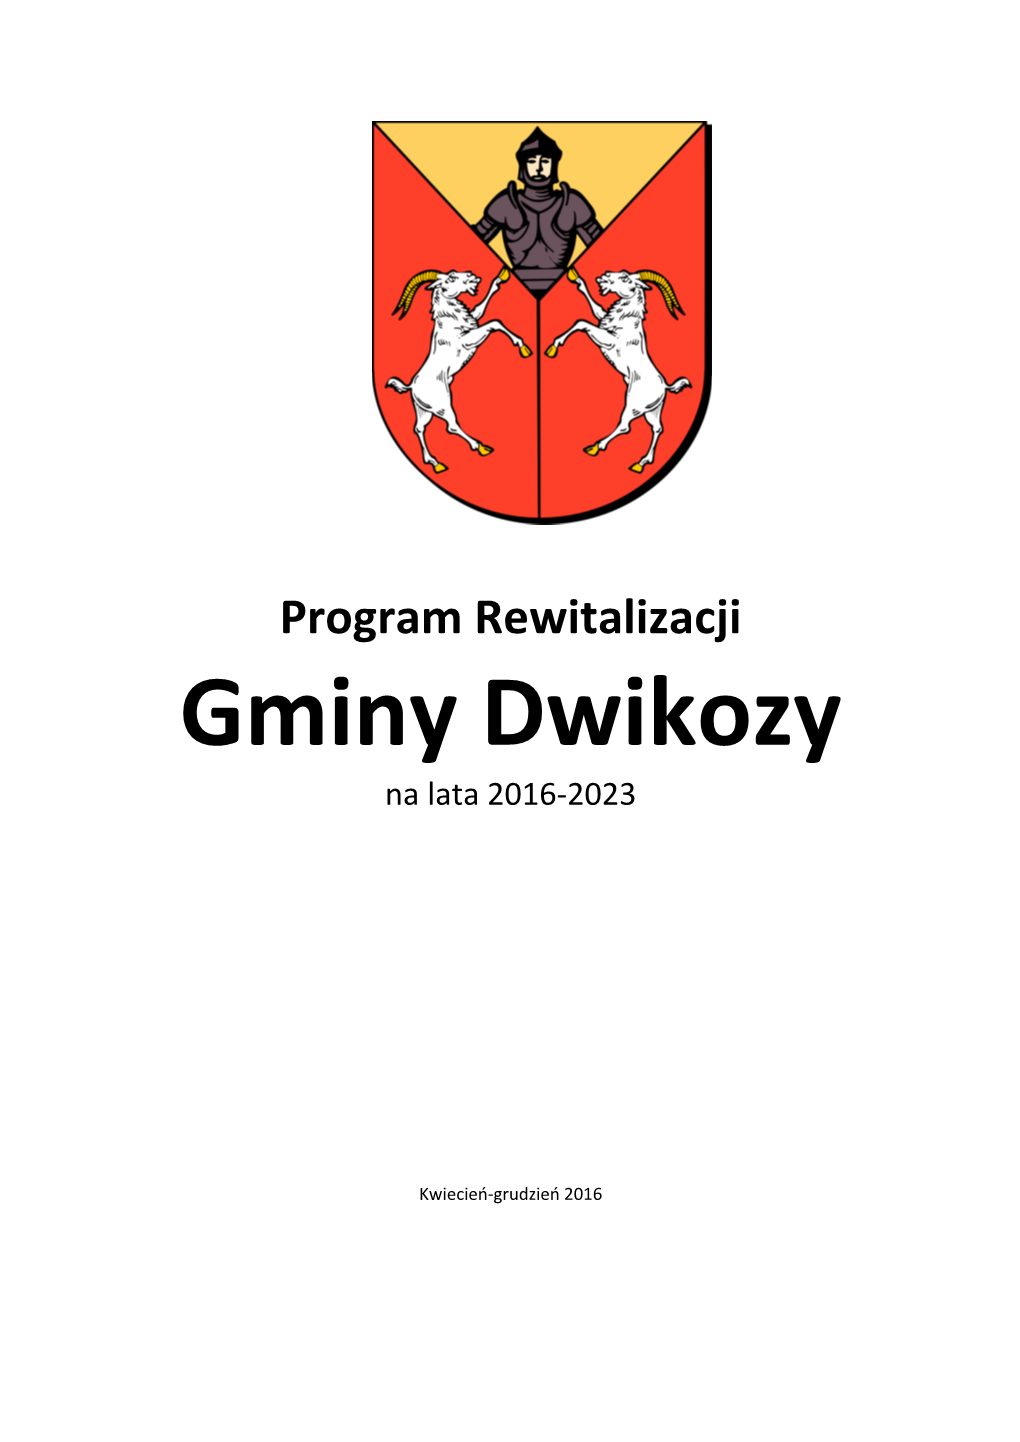 Gminy Dwikozy Na Lata 2016-2023